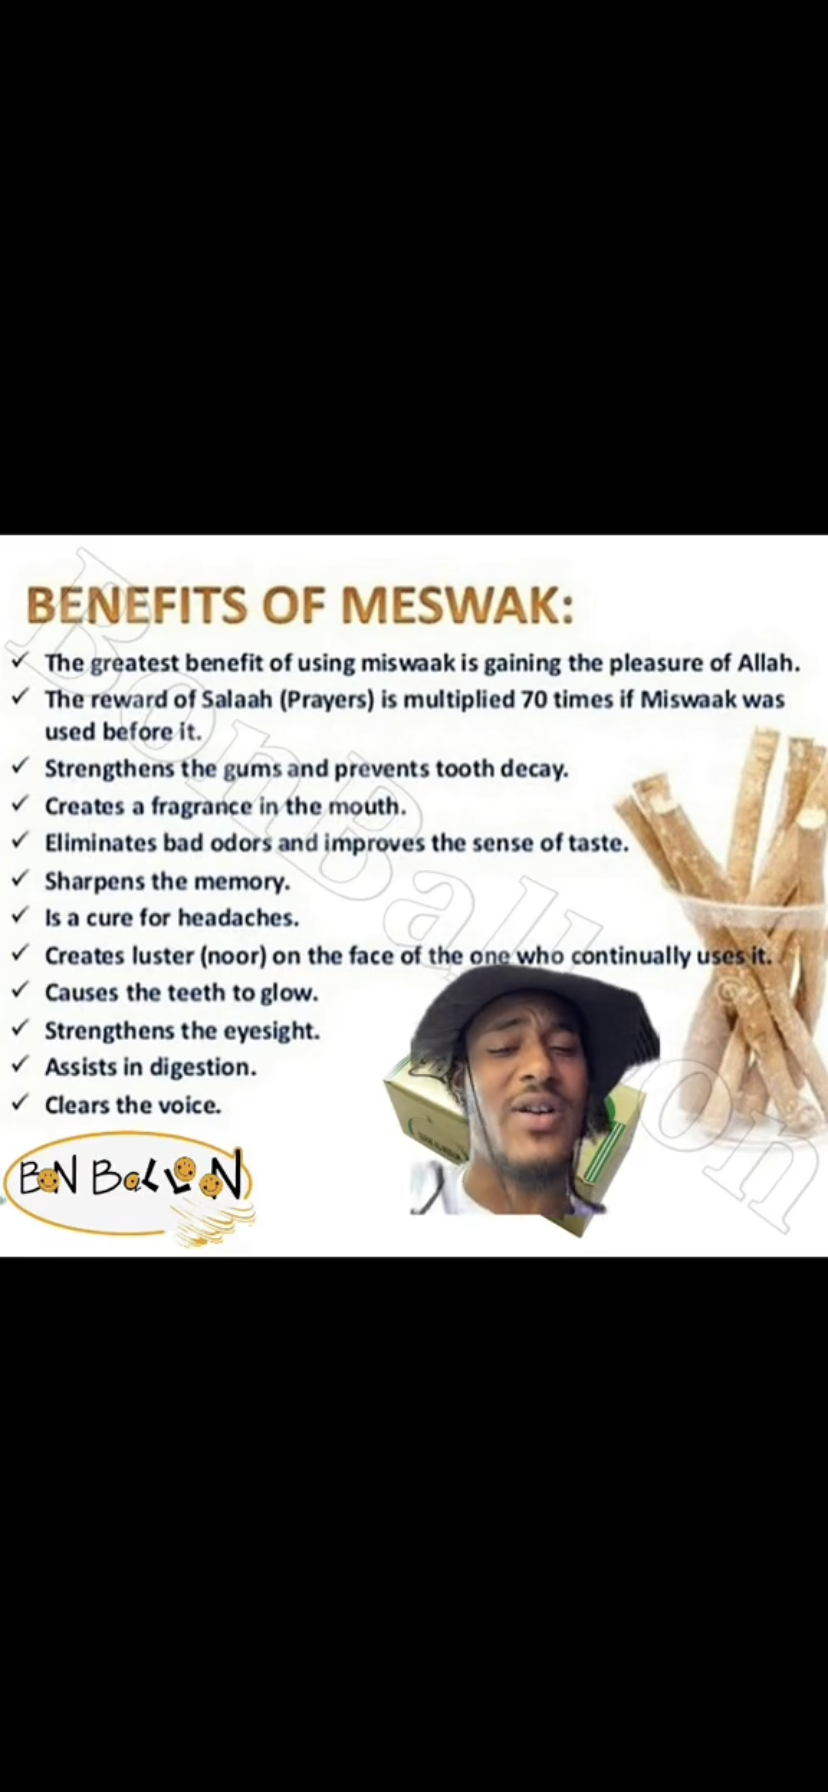 Sewak Al-Falah: Miswak (Traditional Natural Toothbrush)